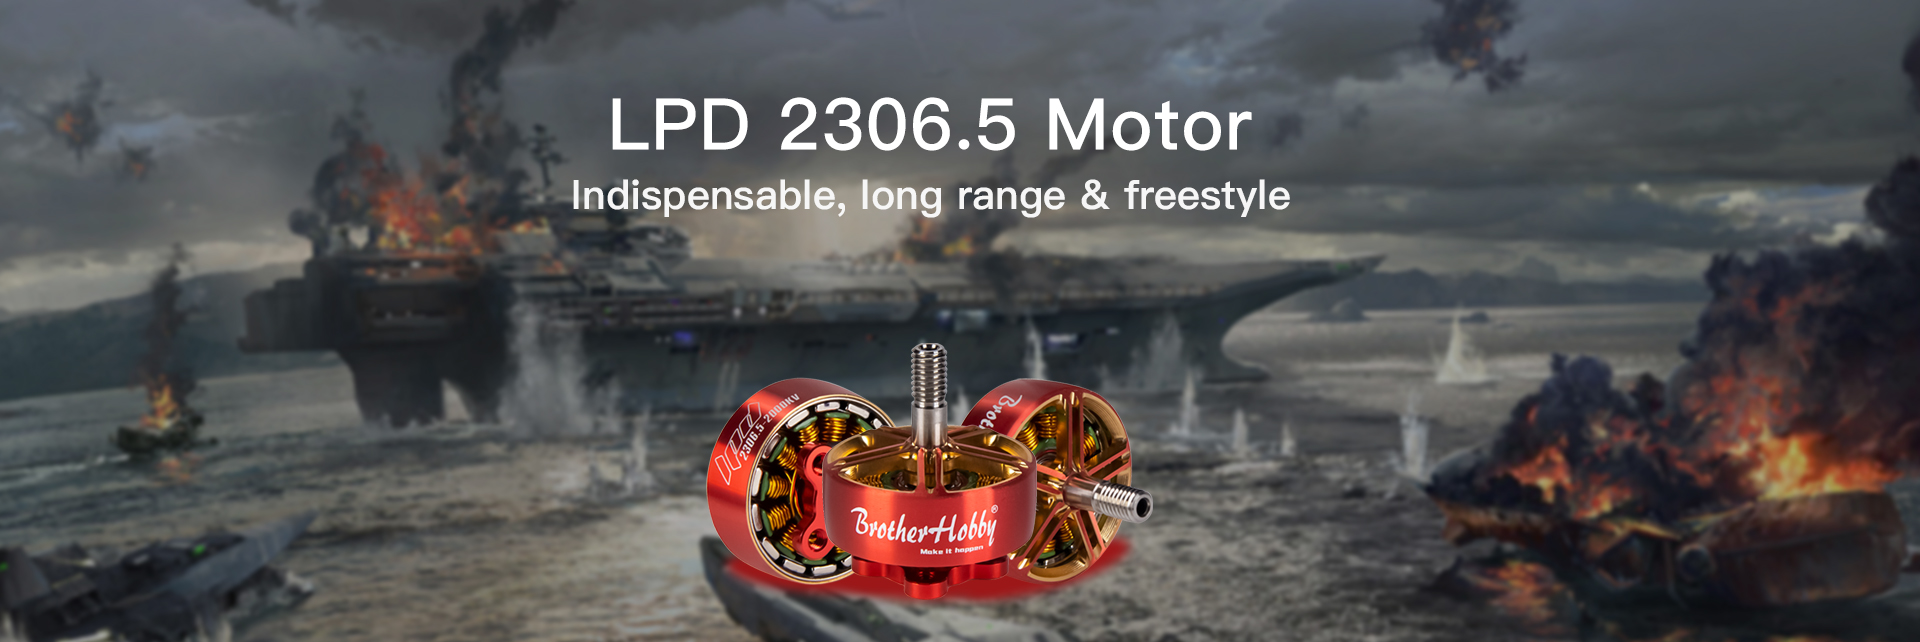 LPD 2306.5 Motor (CW)